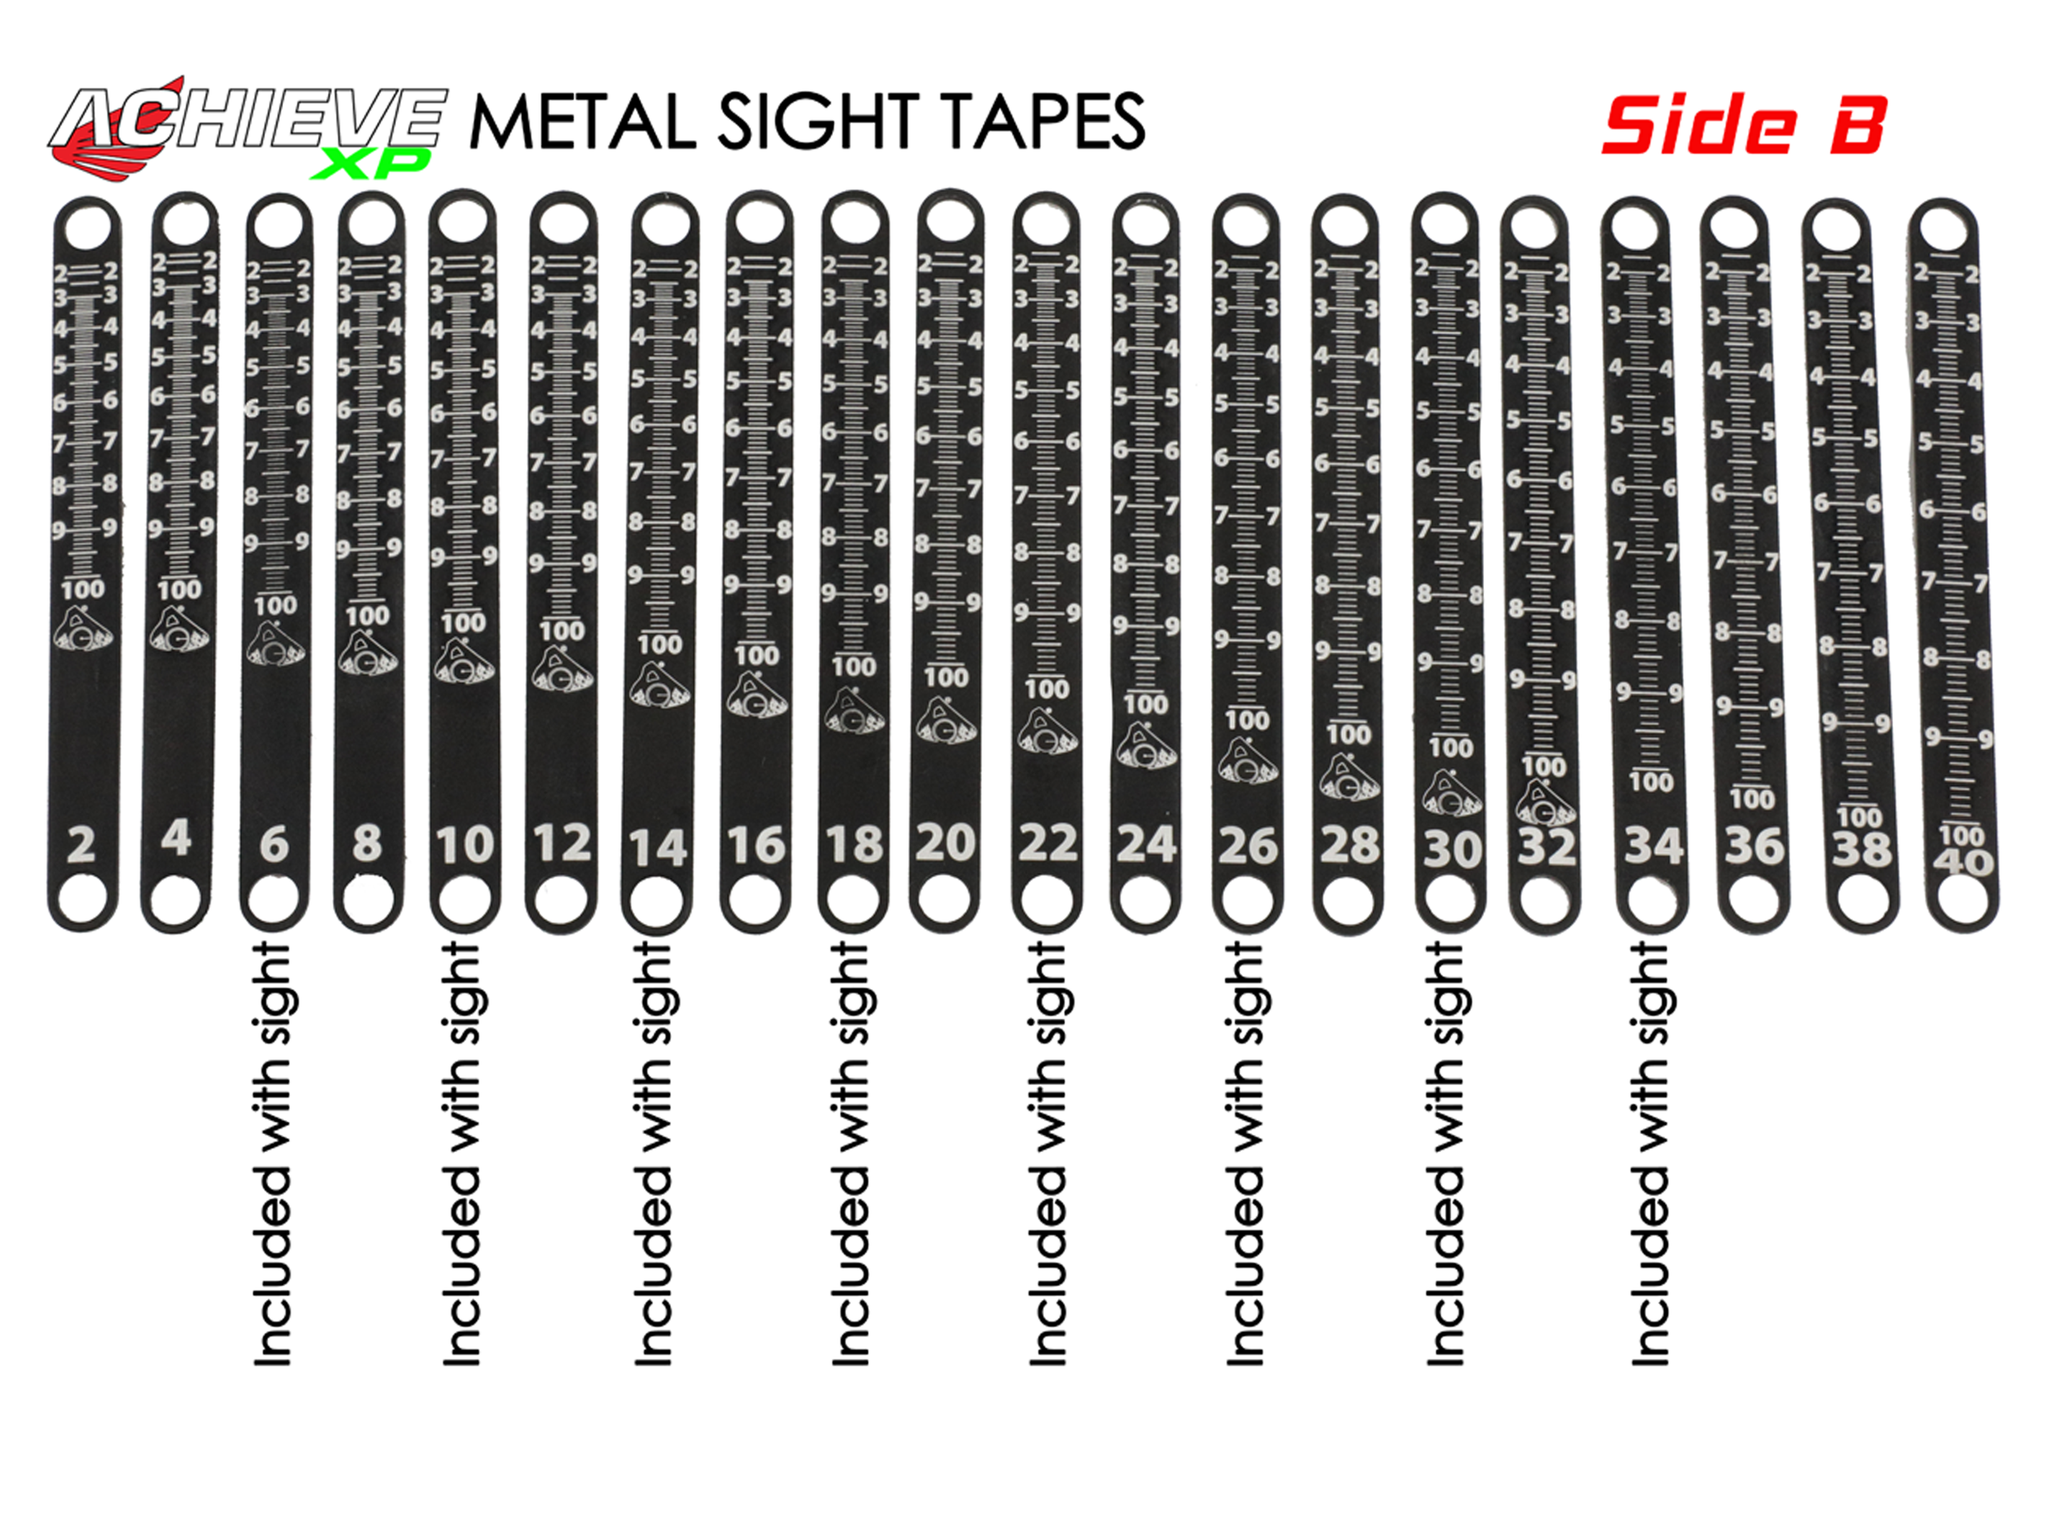 Achieve XP - Metal Sight Tapes - T.R.U.Ball®/AXCEL®